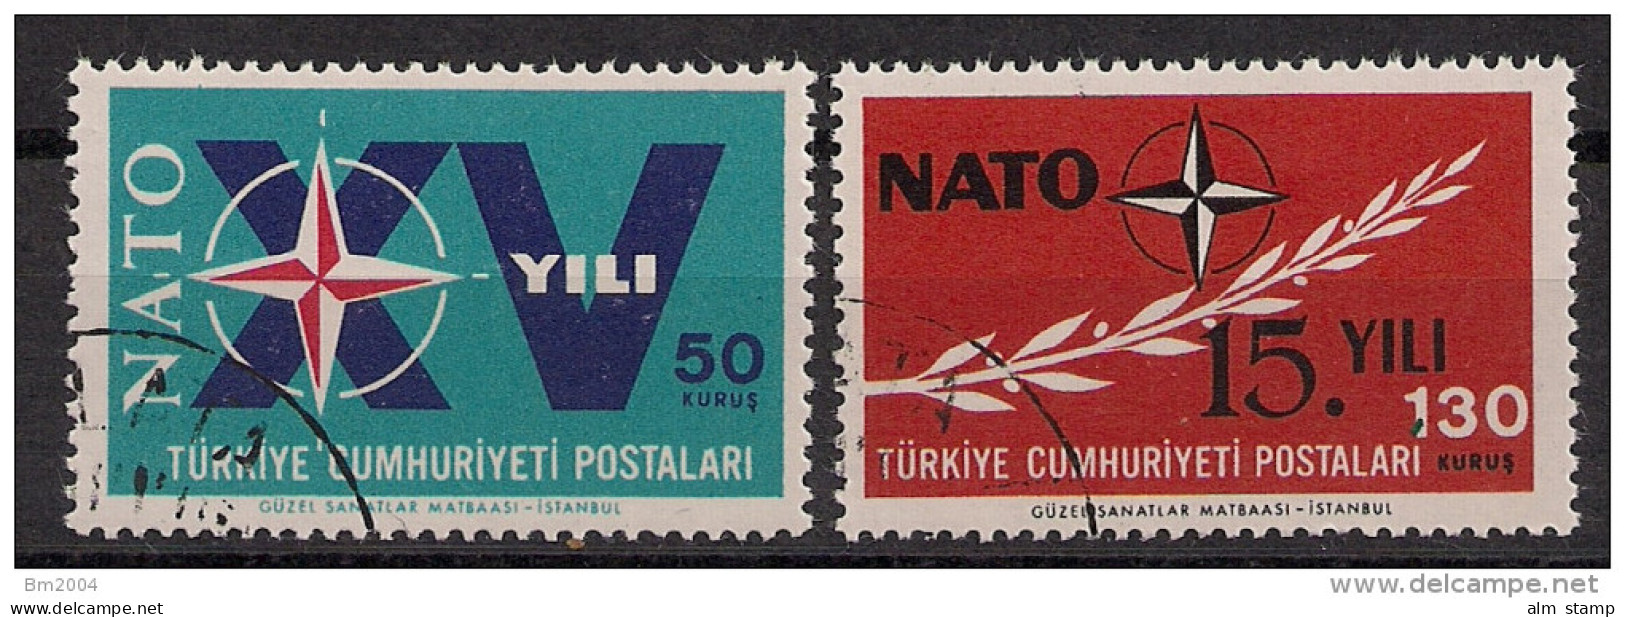 1964 Türkei    Mi. 1899-0 Used     NATO  OTAN - Europese Gedachte